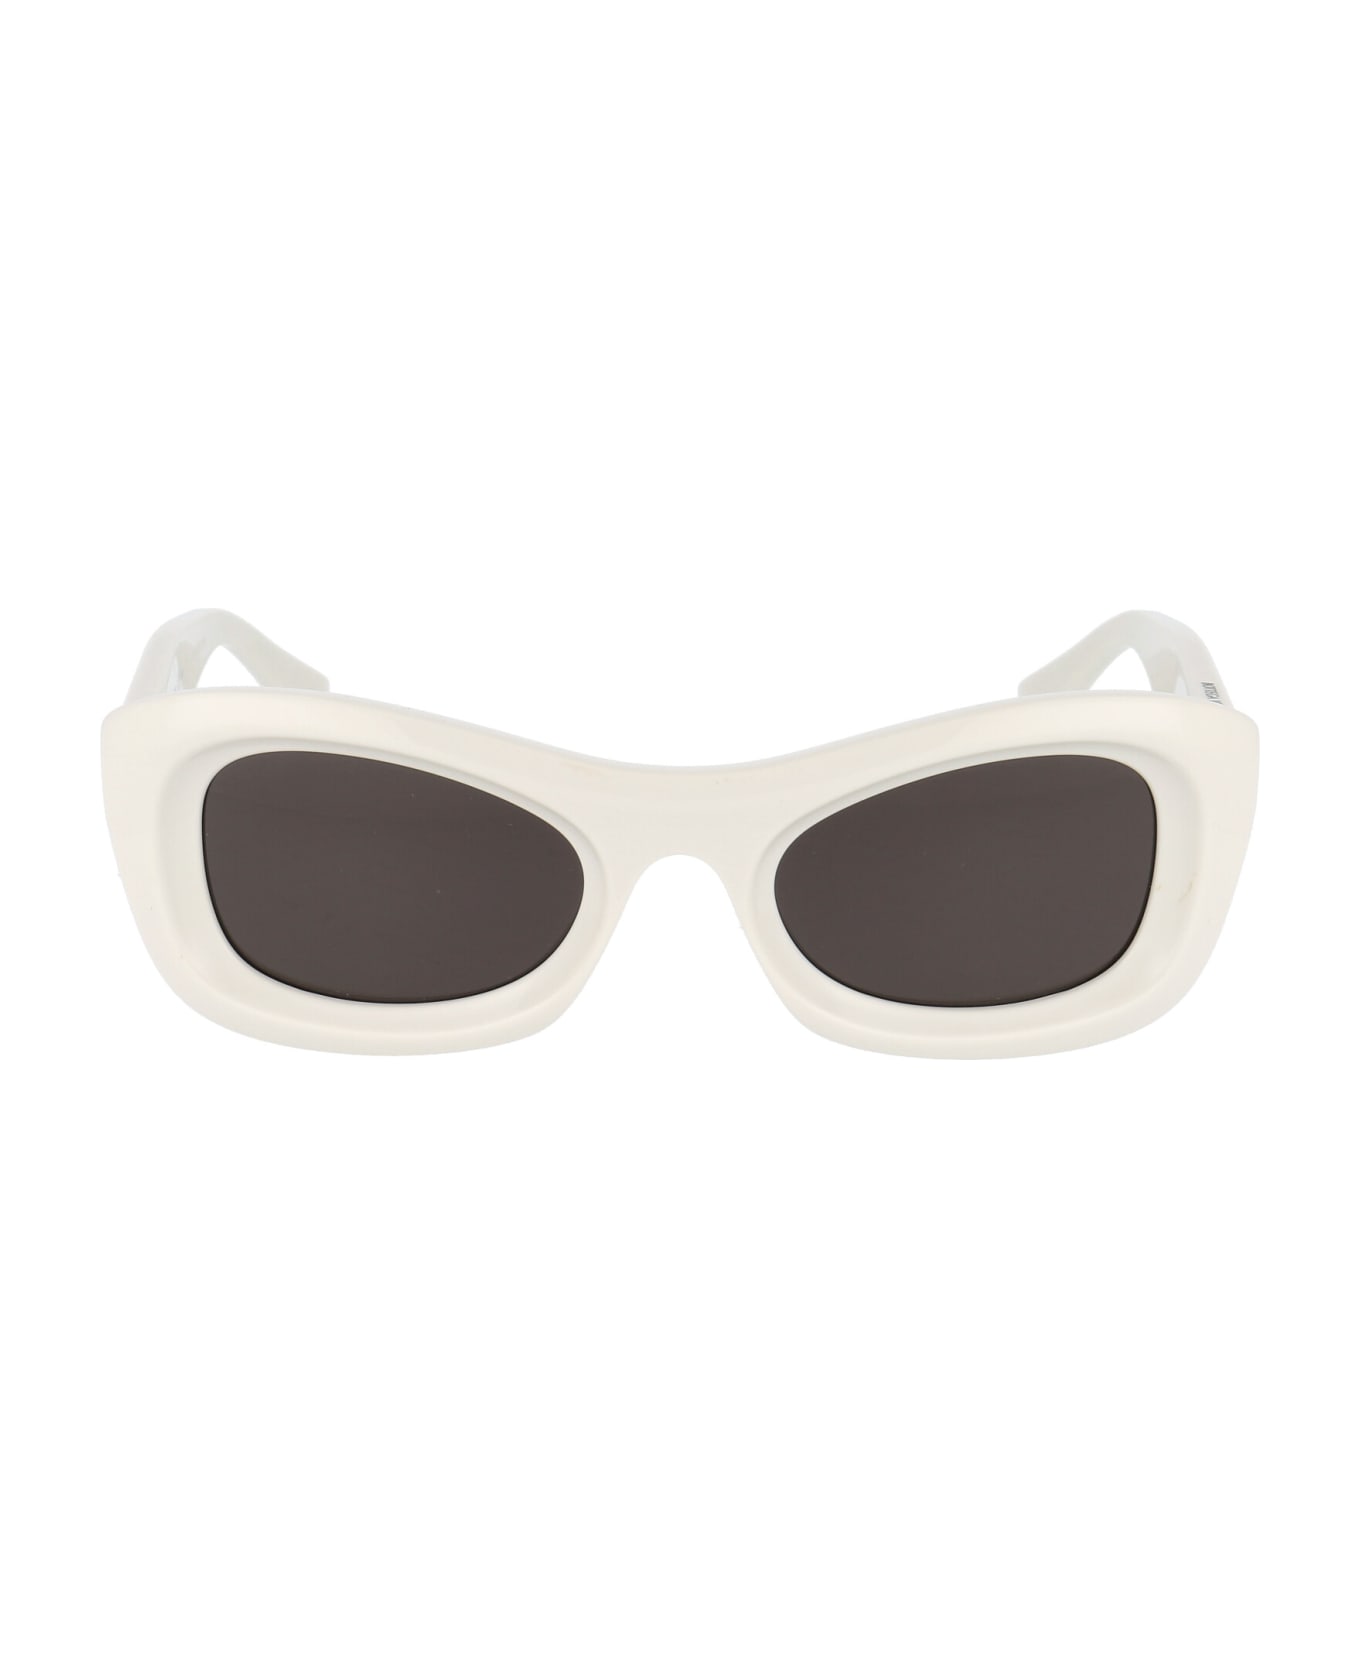 Bottega Veneta Eyewear Bv1088s Sunglasses - 002 IVORY IVORY GREY